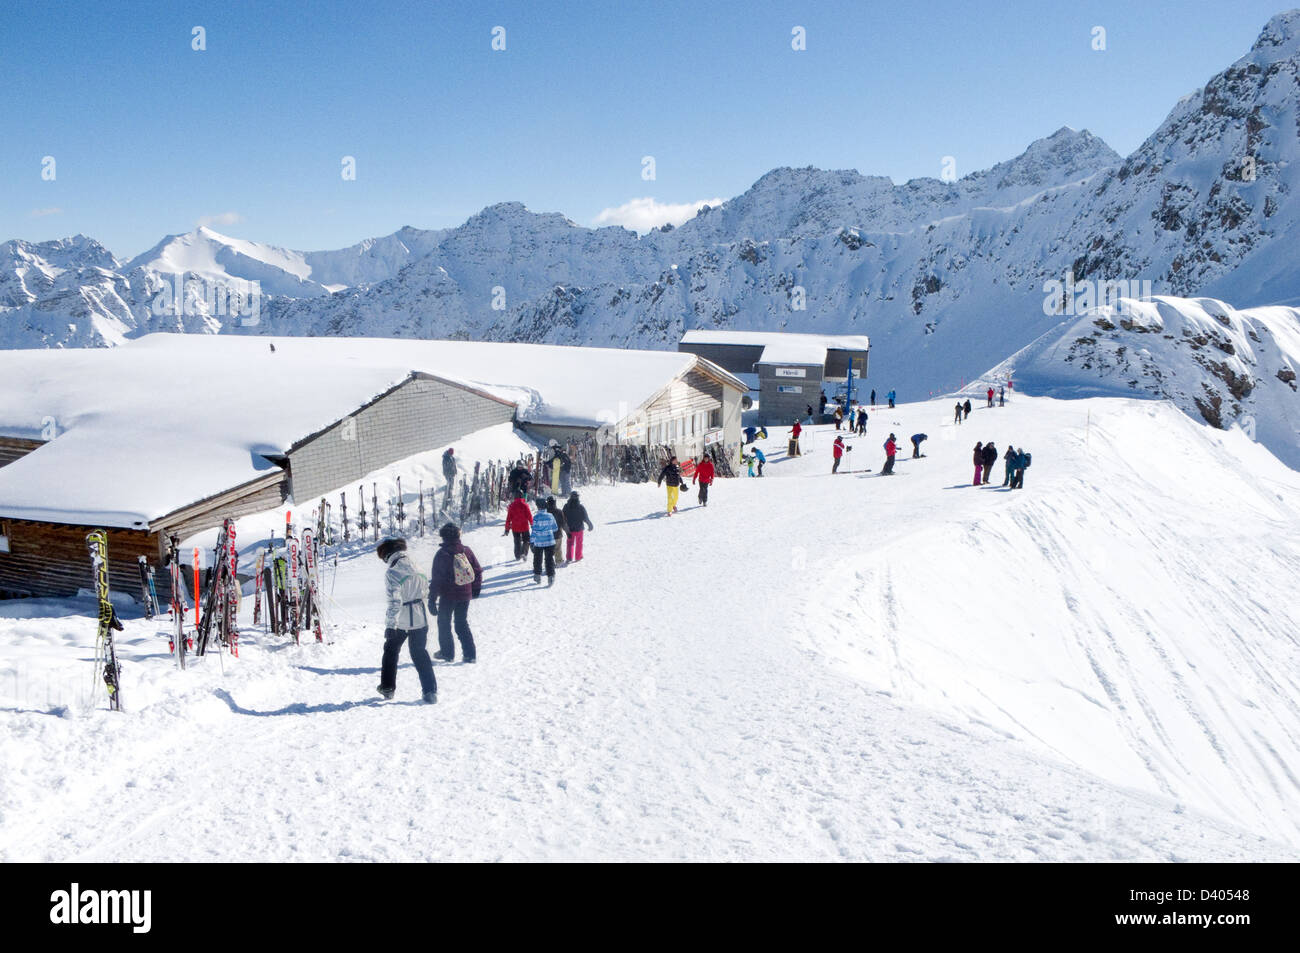 People skiing at the Hornli ski lift, Arosa resort, the Alps, Switzerland, Europe Stock Photo